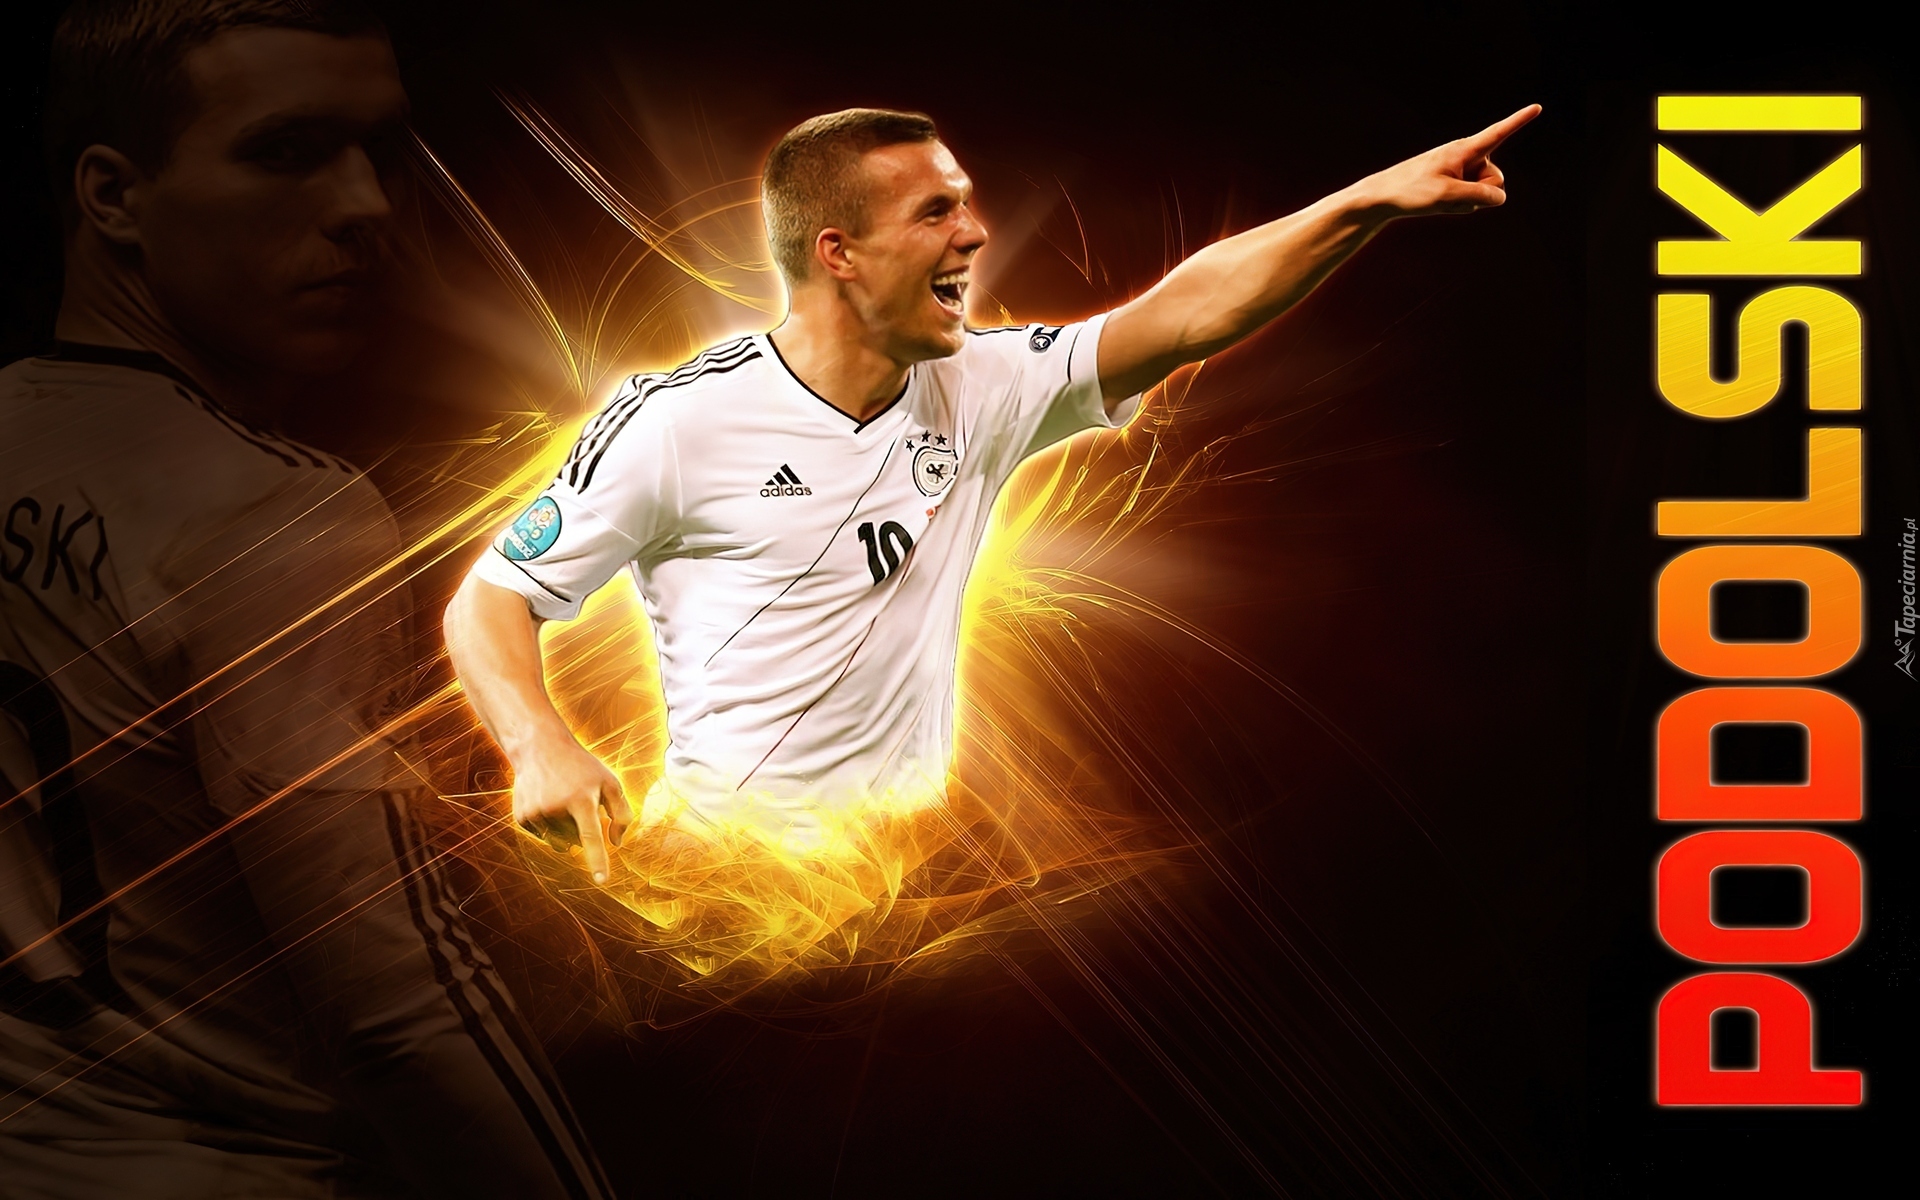 Lukas Podolski, Niemiecki, Piłkarz